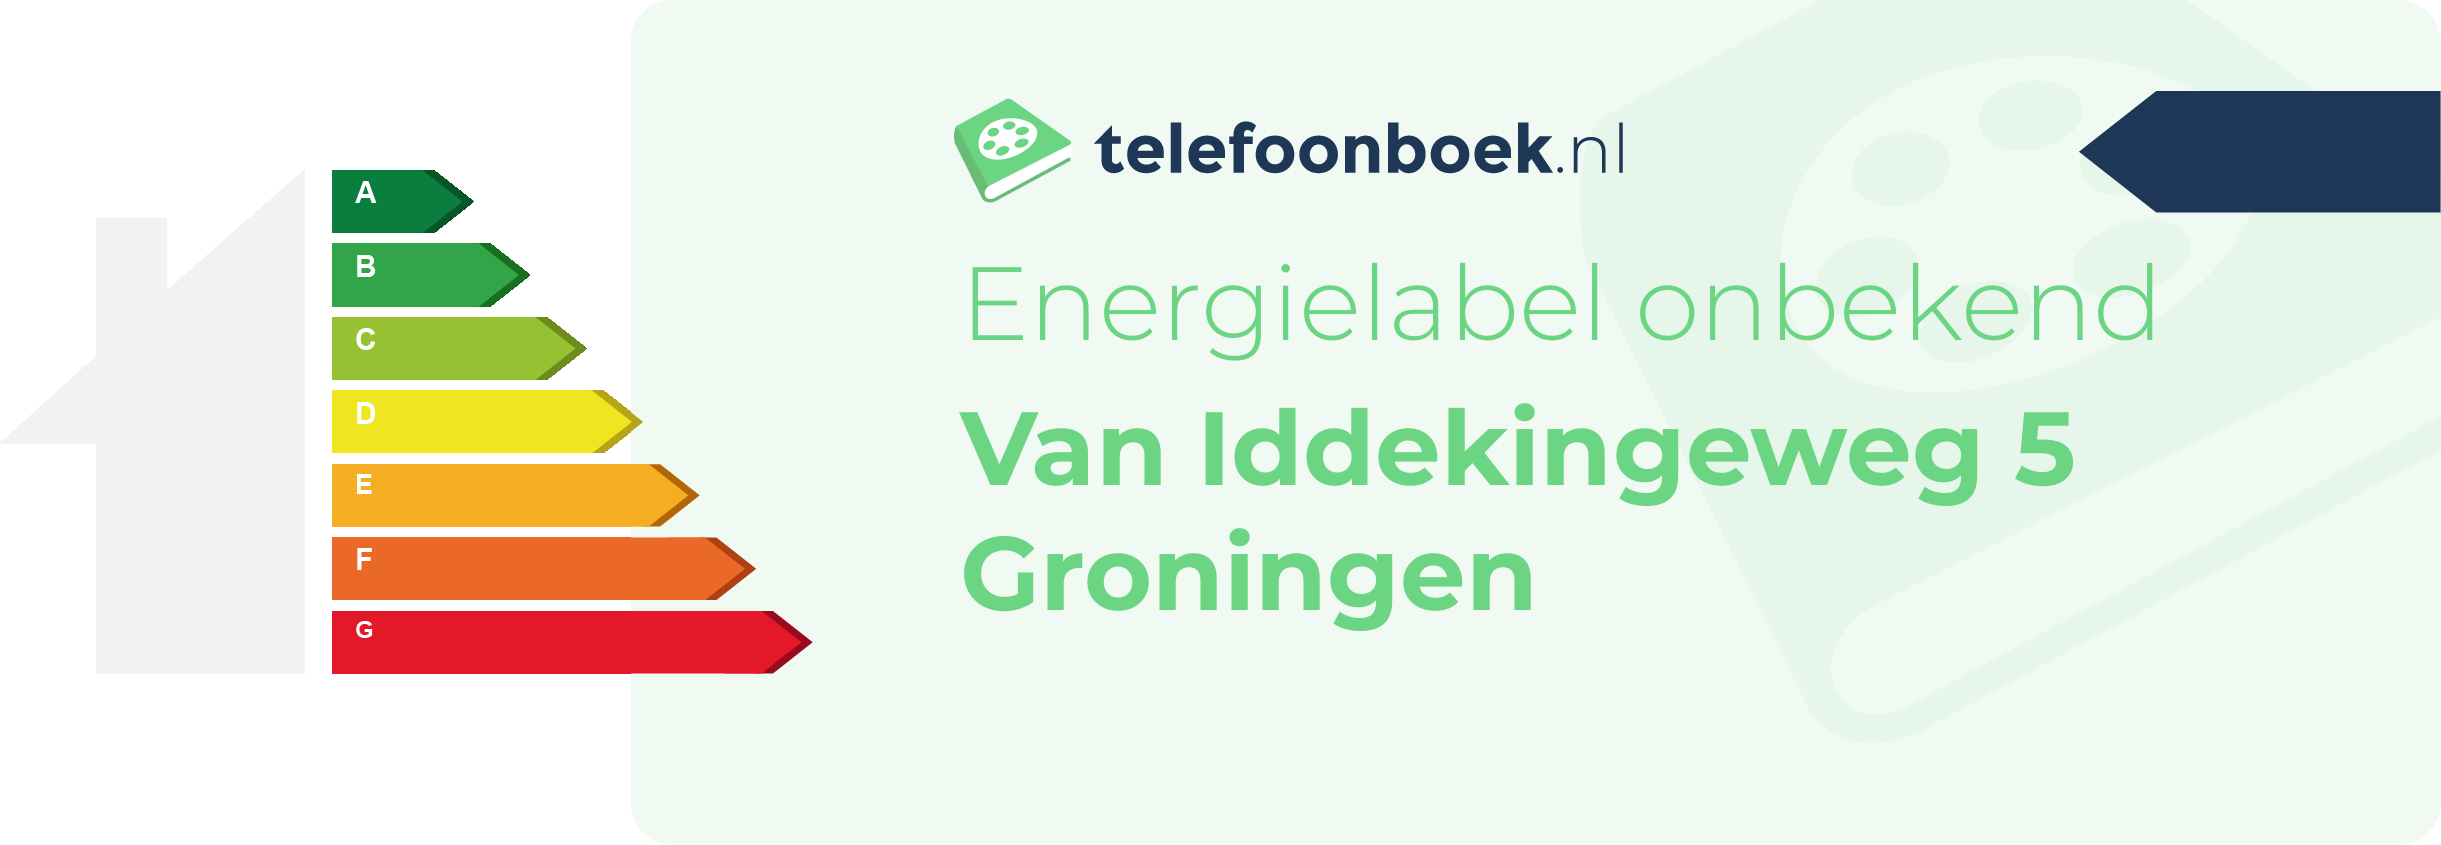 Energielabel Van Iddekingeweg 5 Groningen